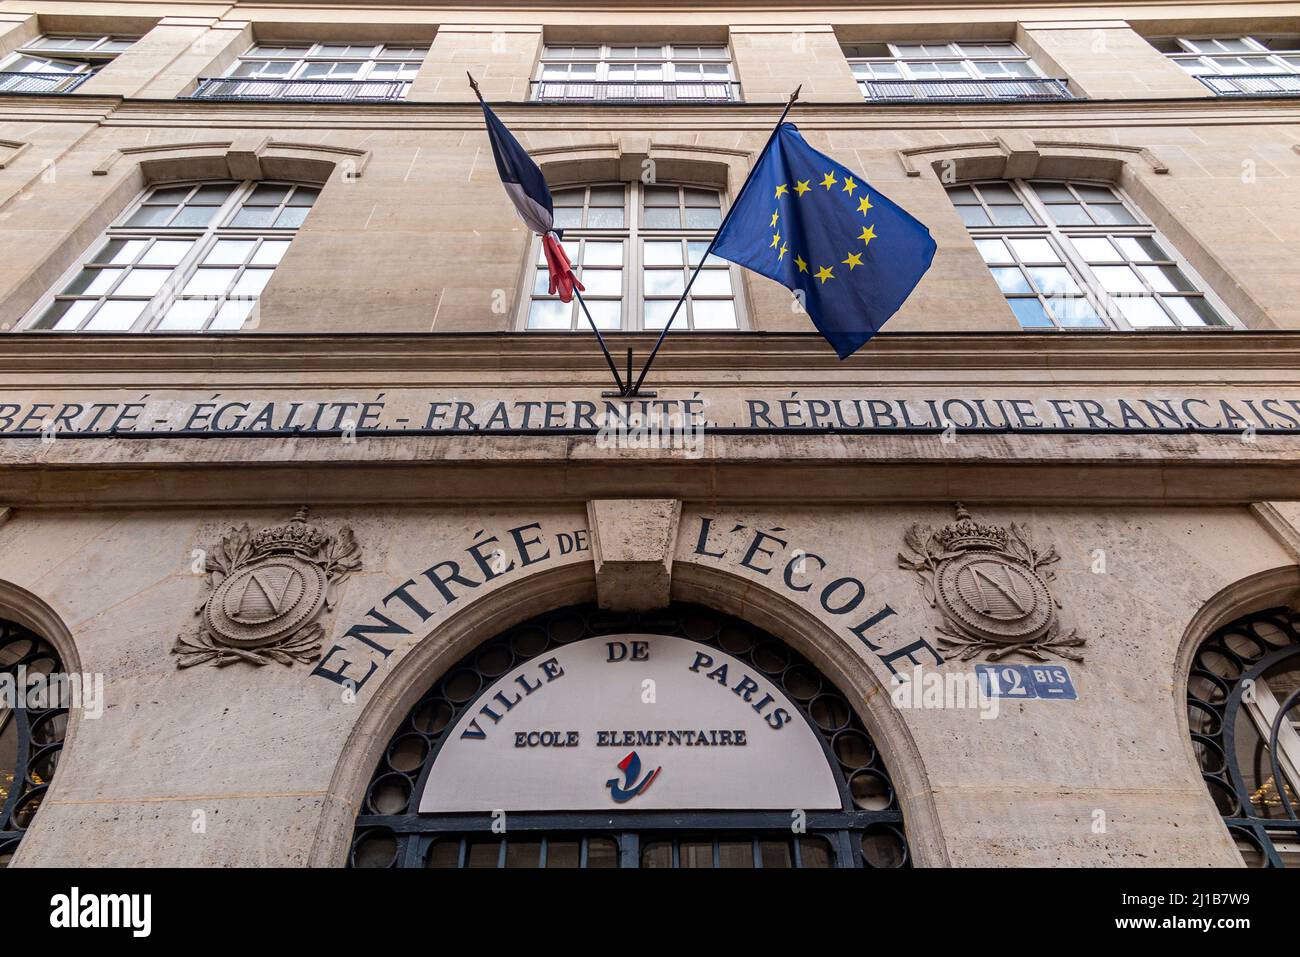 ENTRANCE TO AN ELEMENTARY SCHOOL IN THE CITY OF PARIS,  RUE DE LA BIENFAISANCE, 8TH ARRONDISSEMENT, FRANCE Stock Photo